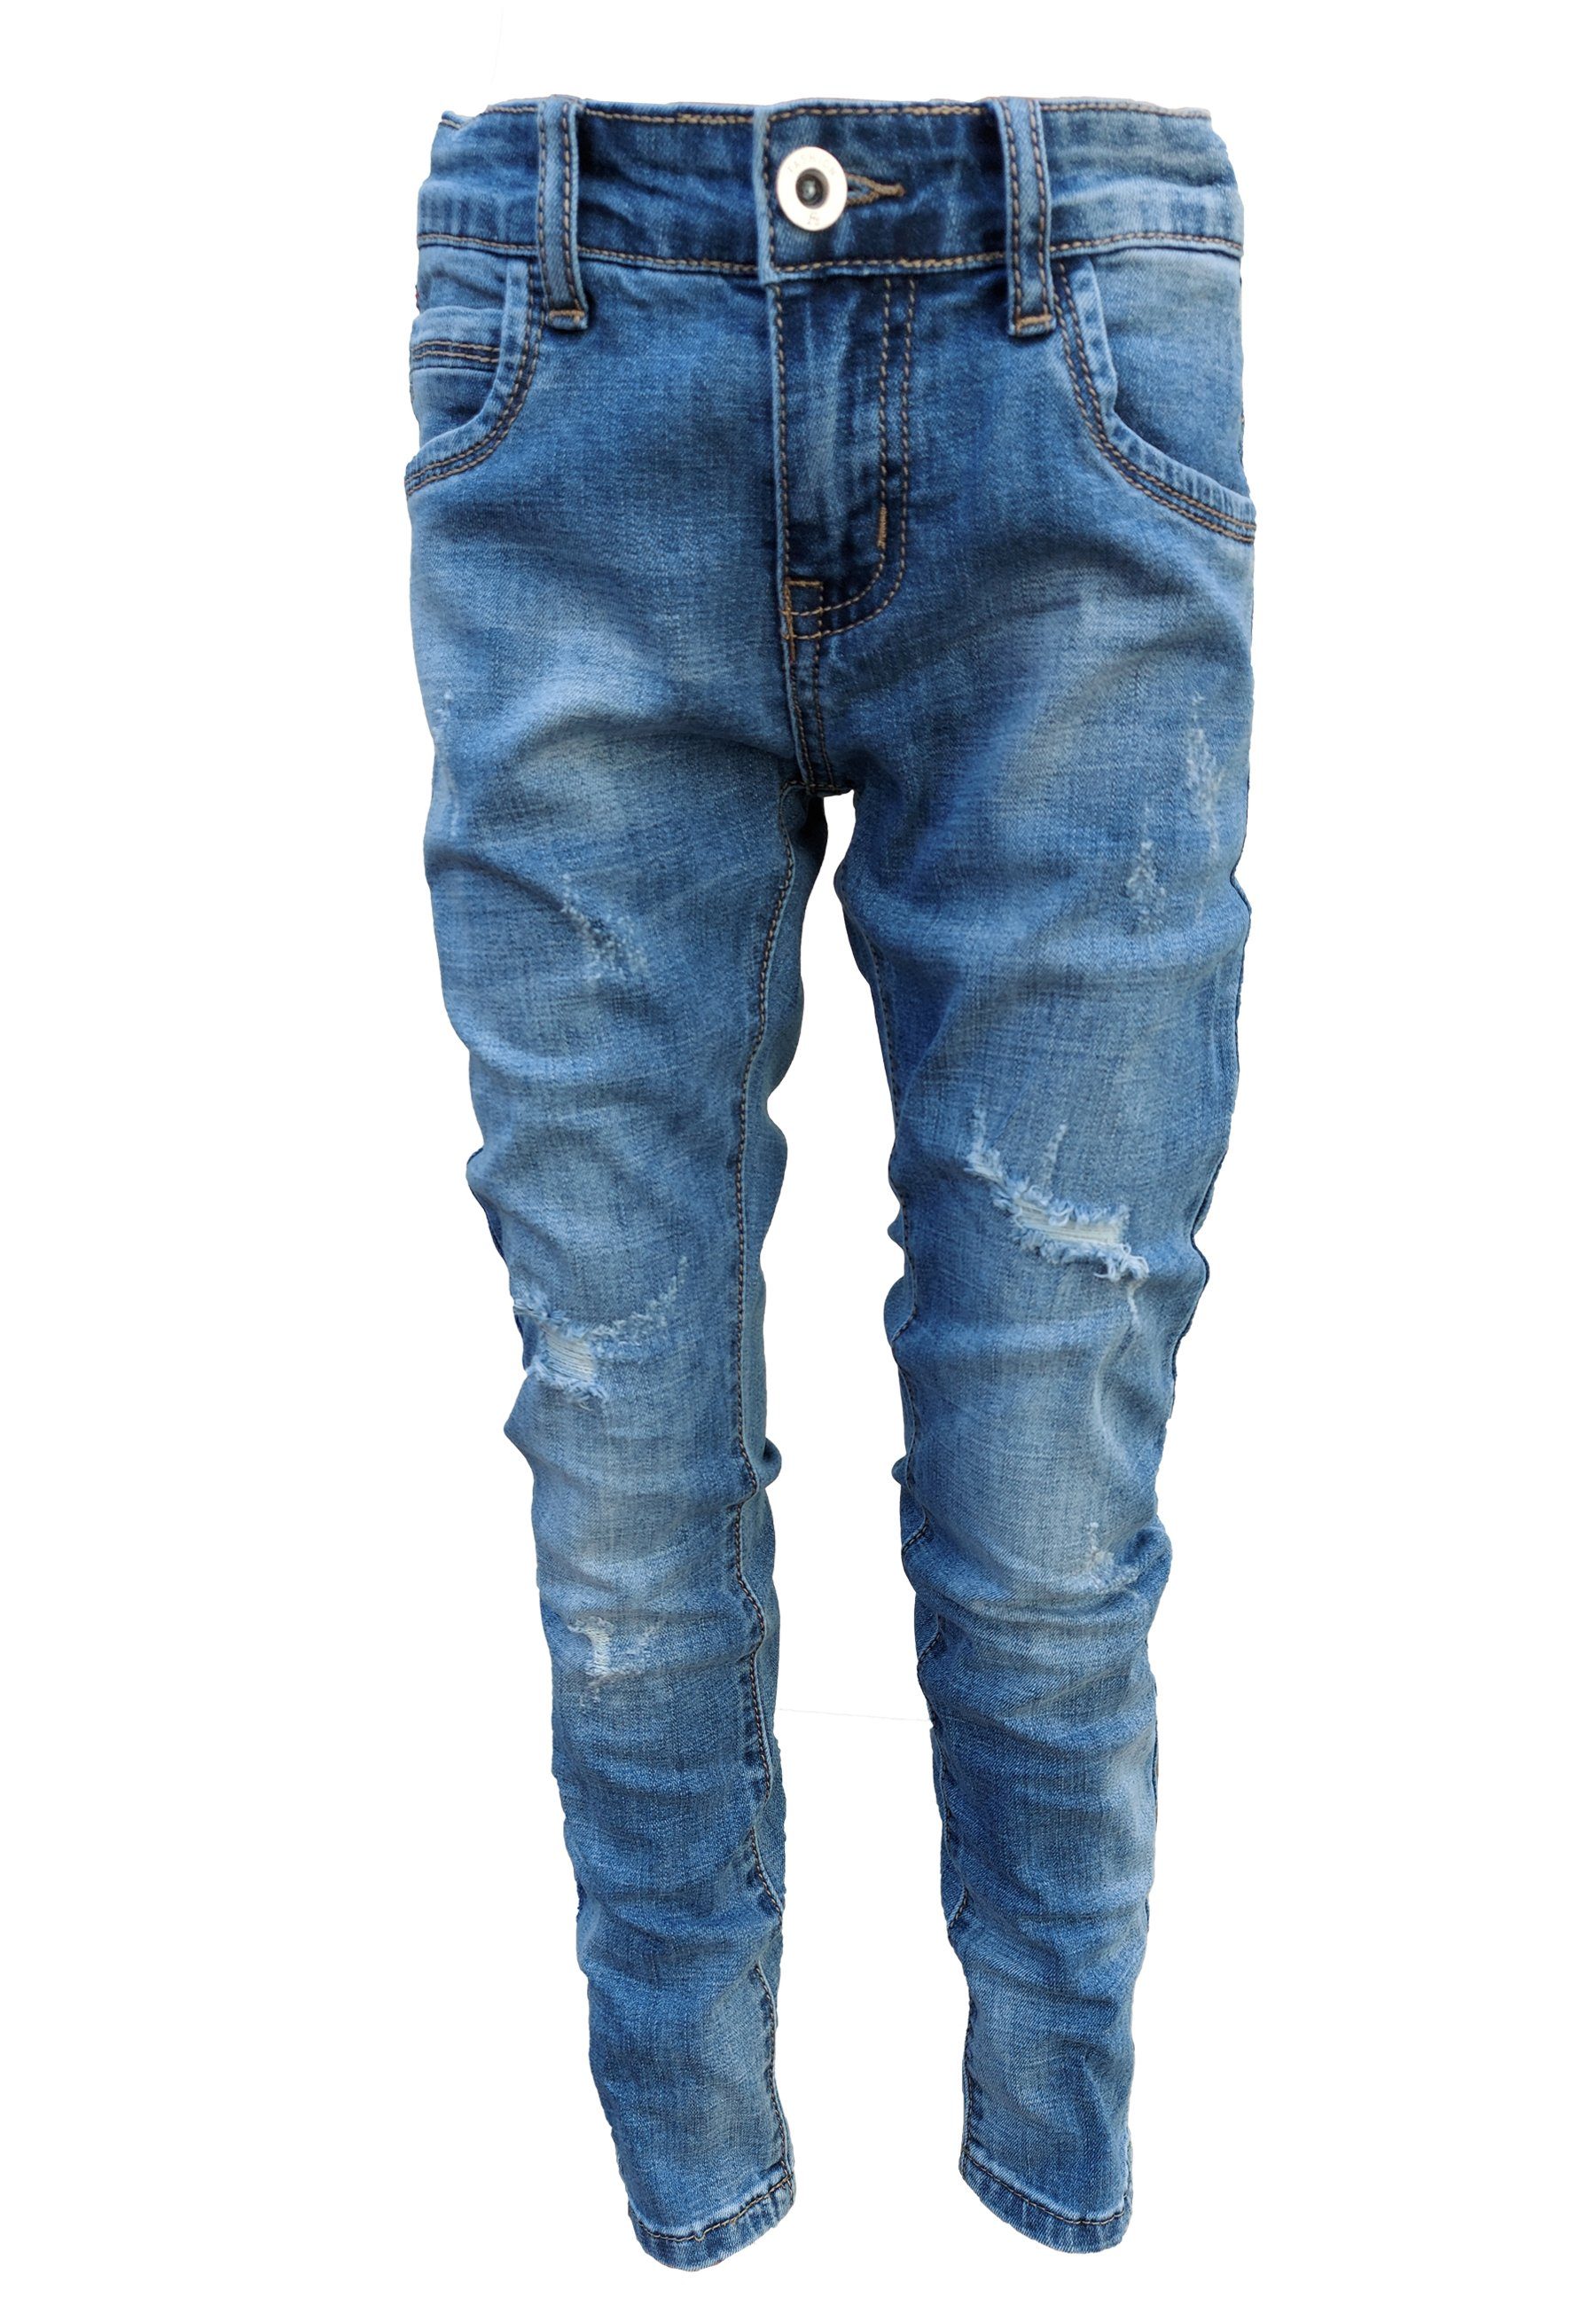 Jungen Destroyed Jeans online kaufen | OTTO